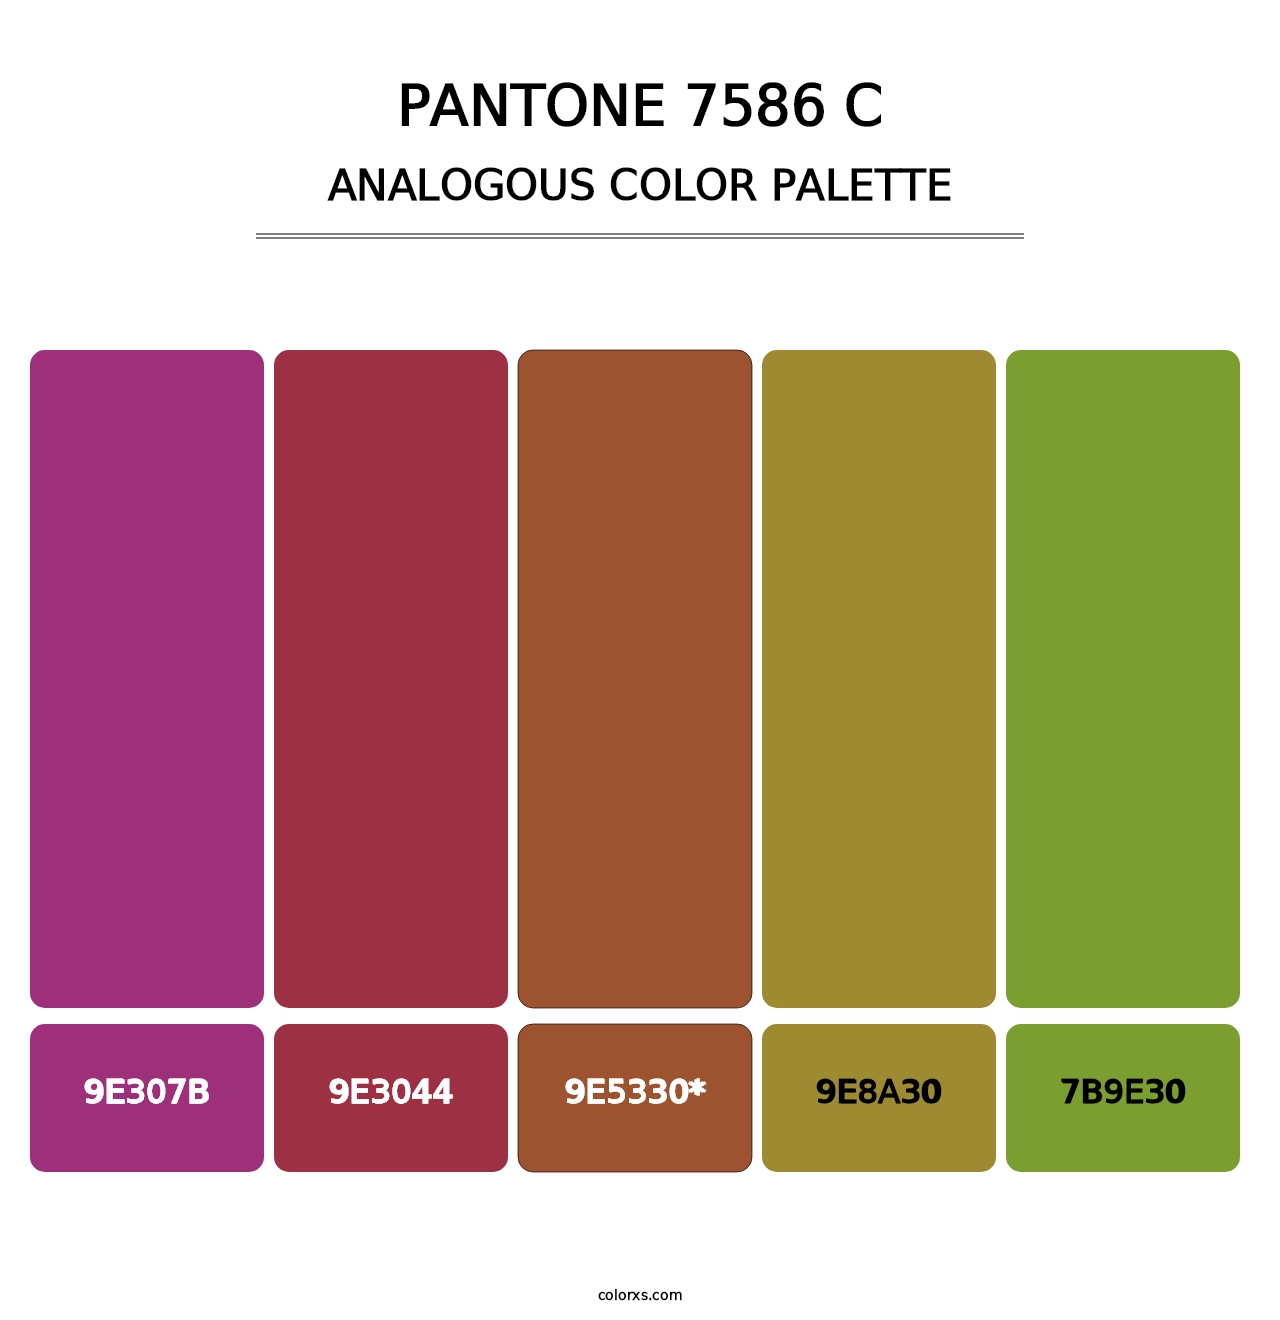 PANTONE 7586 C - Analogous Color Palette